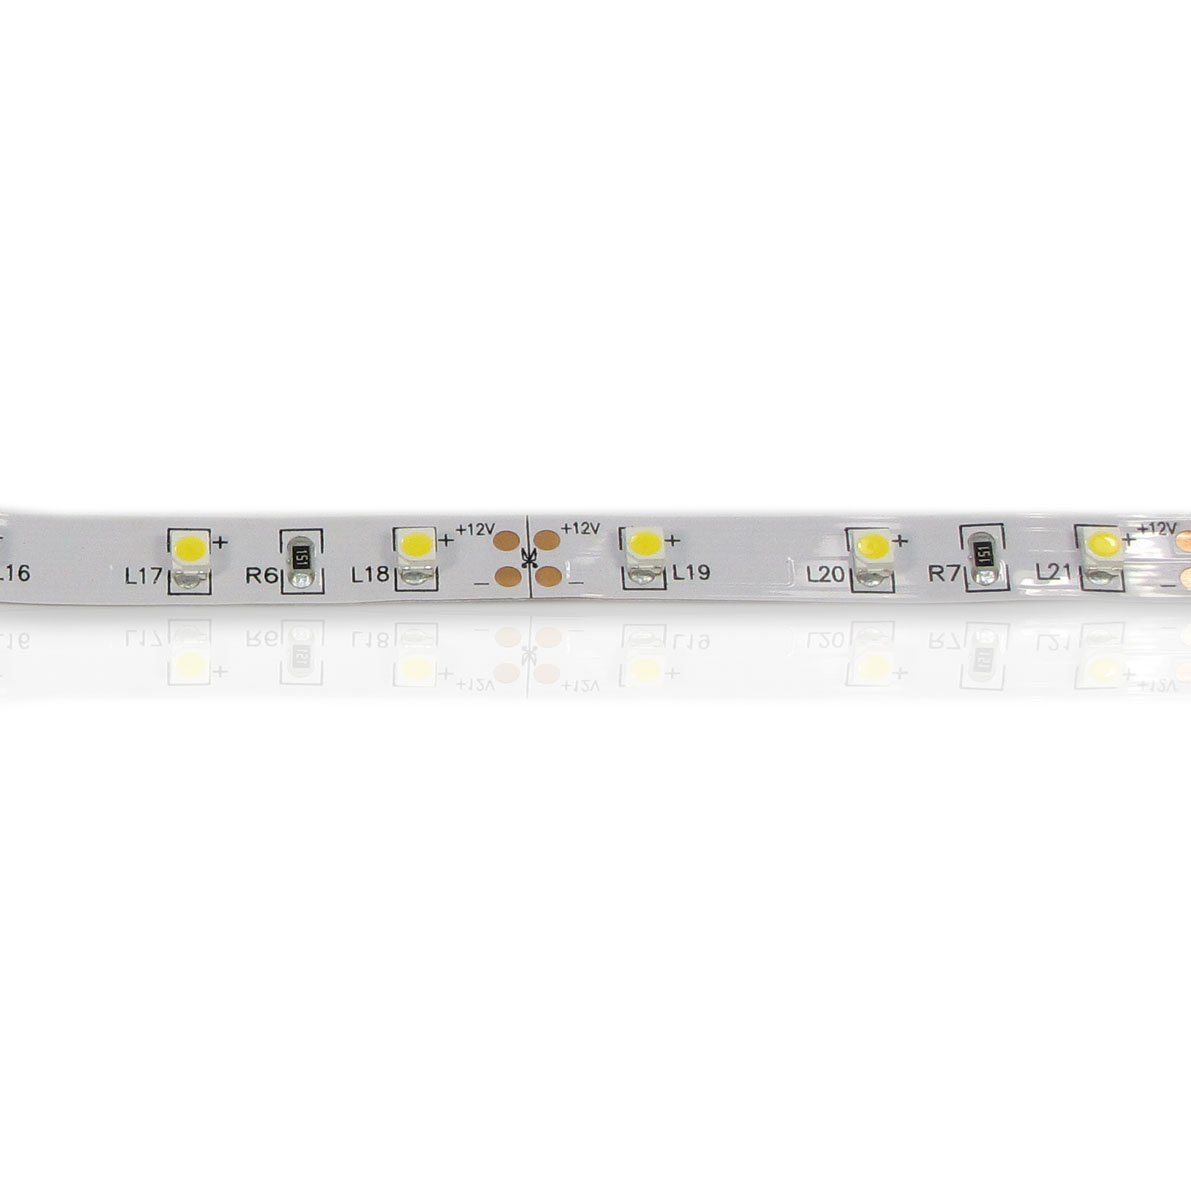 светодиодная лента standart pro class, 3528, 60 led/m, warm white, 12v, ip33, артикул 28149